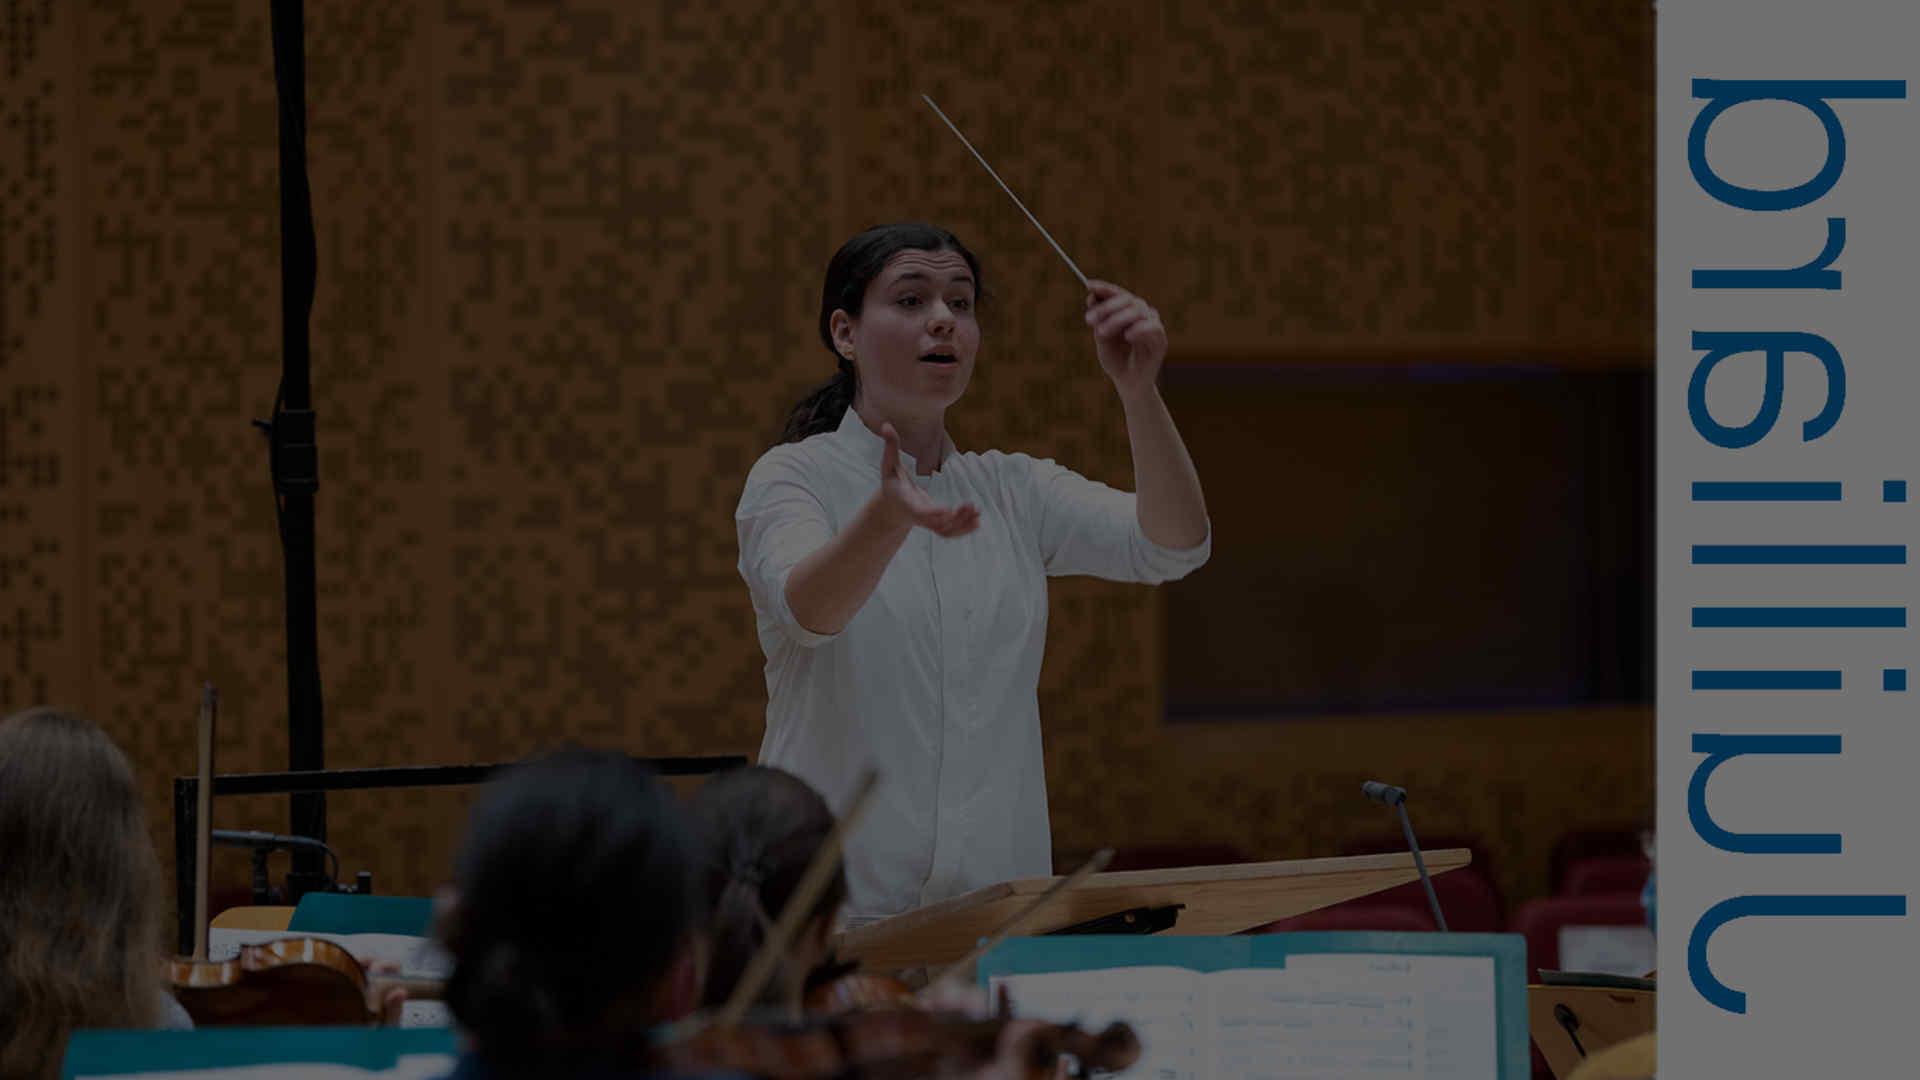 Juilliard orchestral conducting student Shira Samuels-Shragg